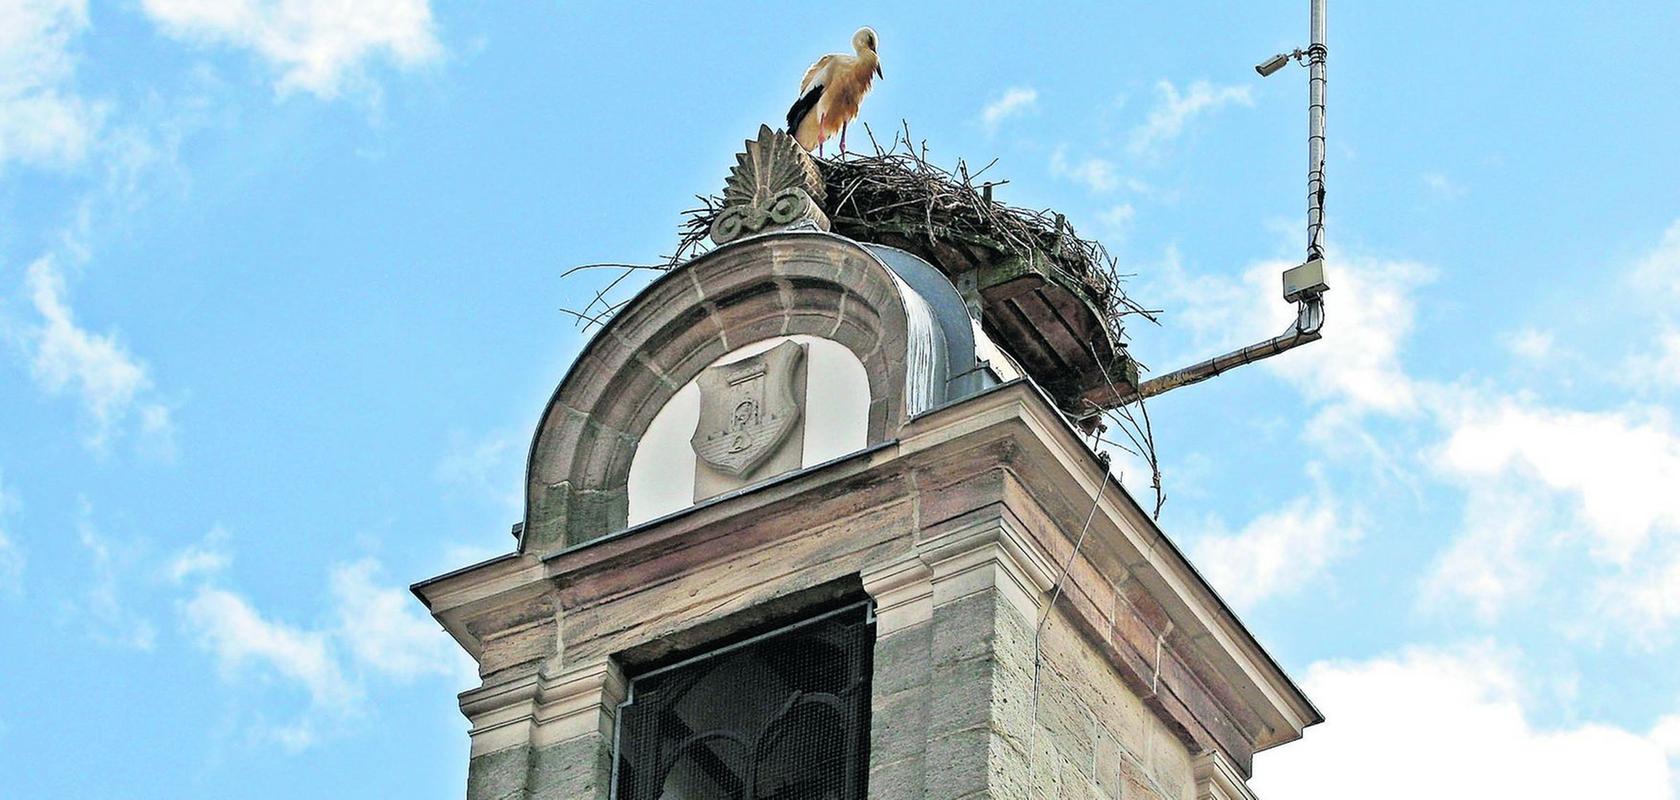 Ein Ort zum Wohlfühlen: Auf dem alten Rathaus in Höchstadt hat sich schon lange ein Storch eingenistet. In Röttenbach hingegen stellt man die Frage, wie mit dem erfolglosen Storchen-Paar umzugehen ist. Manche wollen das unfruchtbare Männchen gar vertreiben.